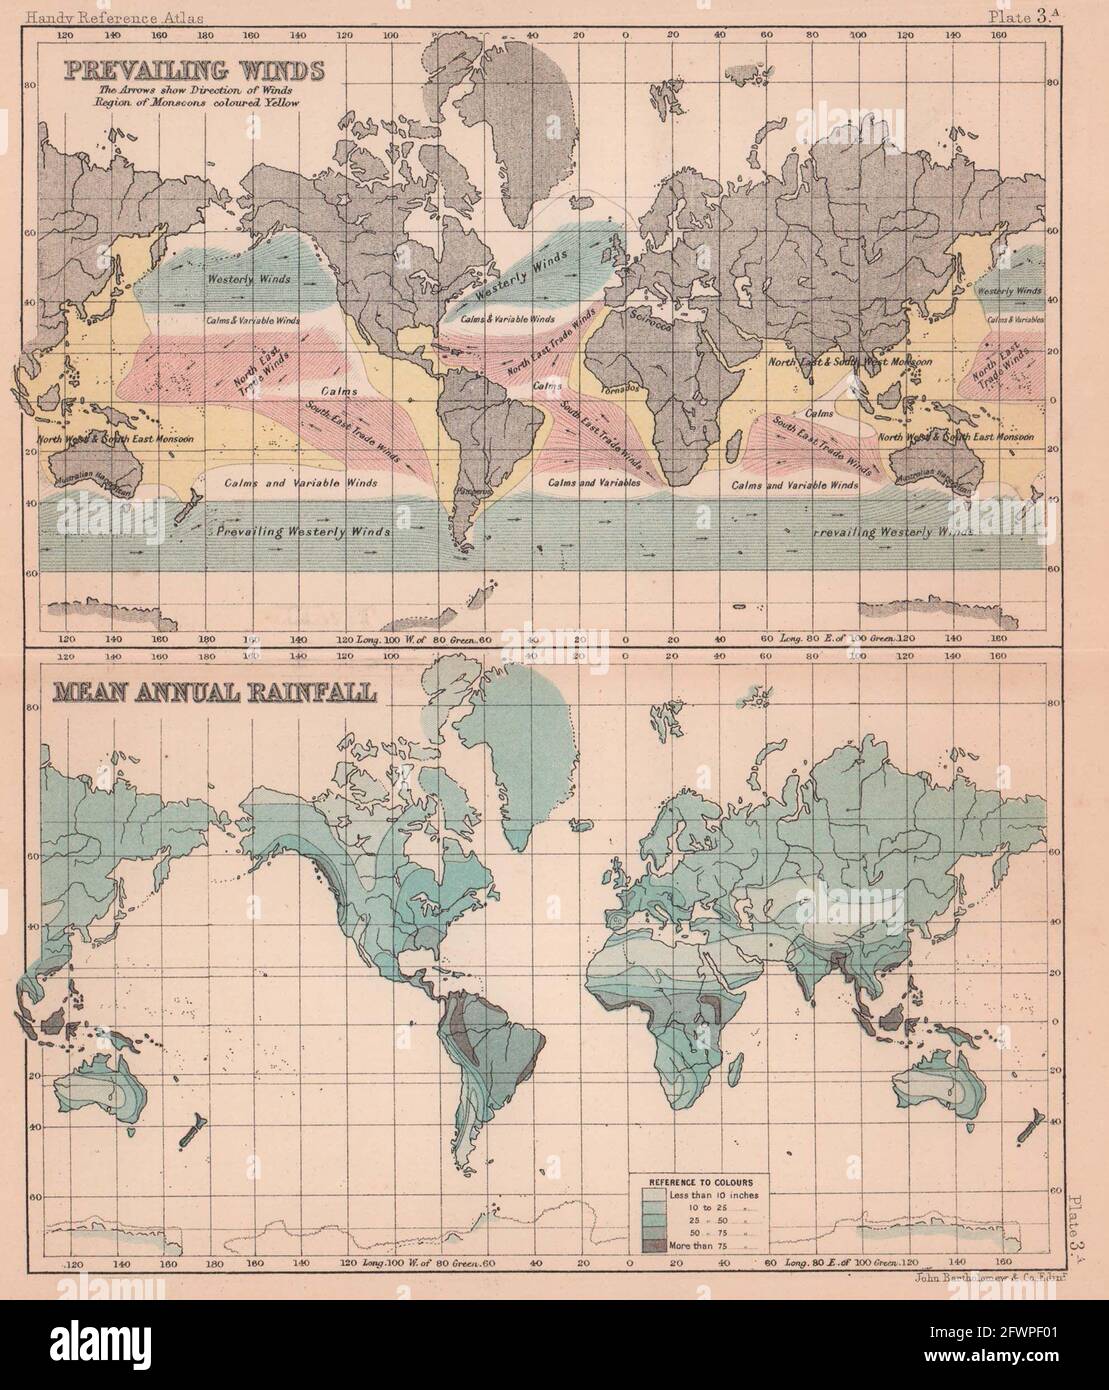 Vorherrschende Winde und mittlere jährliche Niederschläge. Welt. BARTHOLOMEW 1893 alte Karte Stockfoto